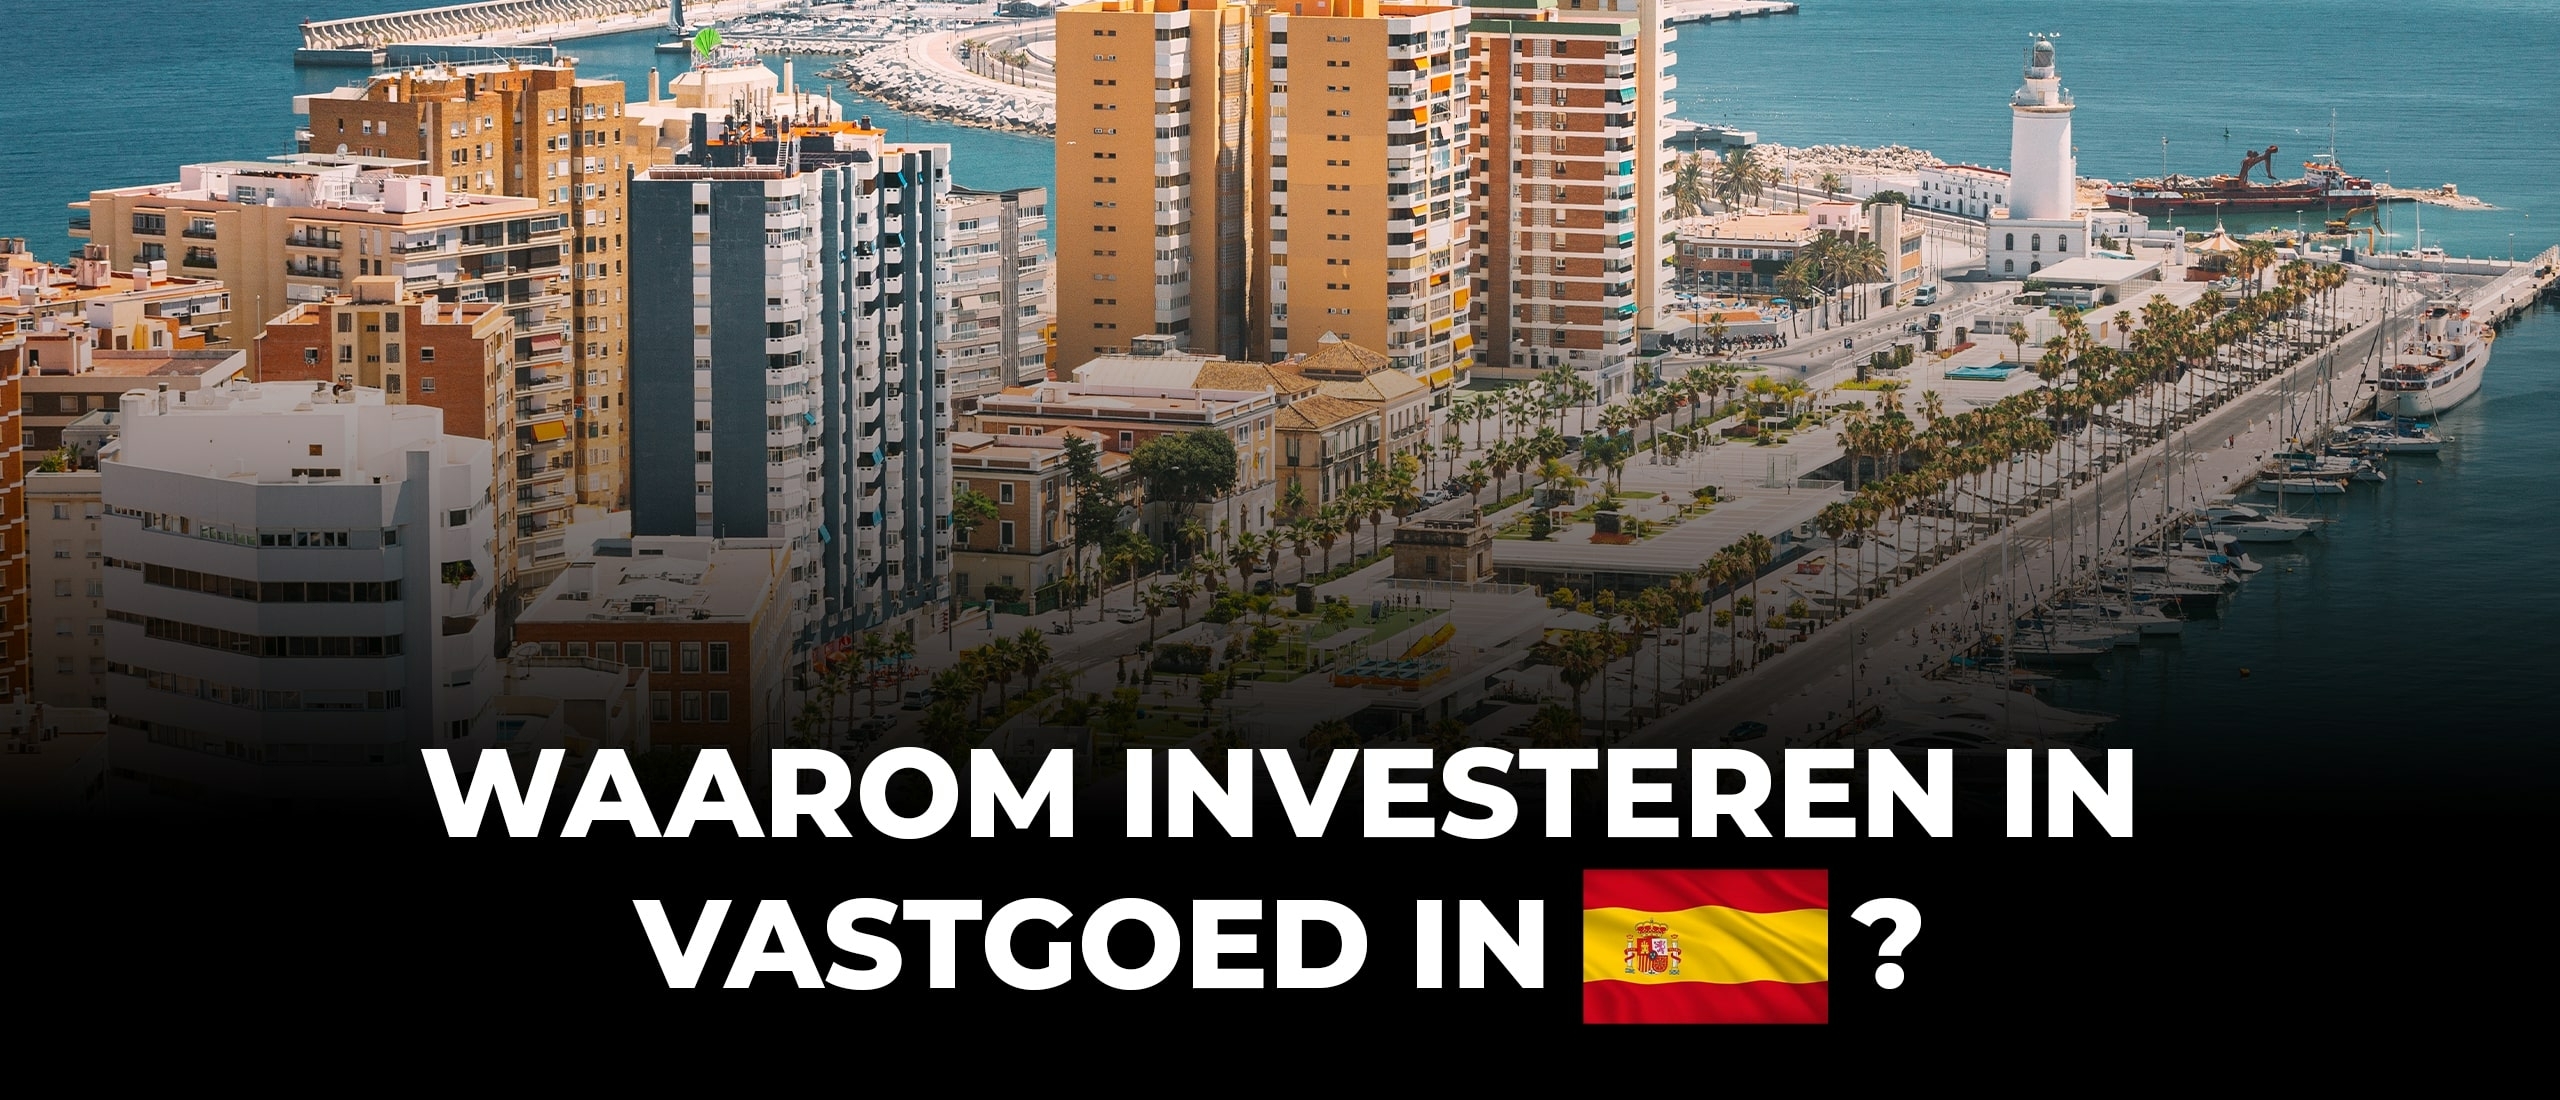 Waarom investeren in vastgoed Spanje? Ontdek 7 overtuigende redenen